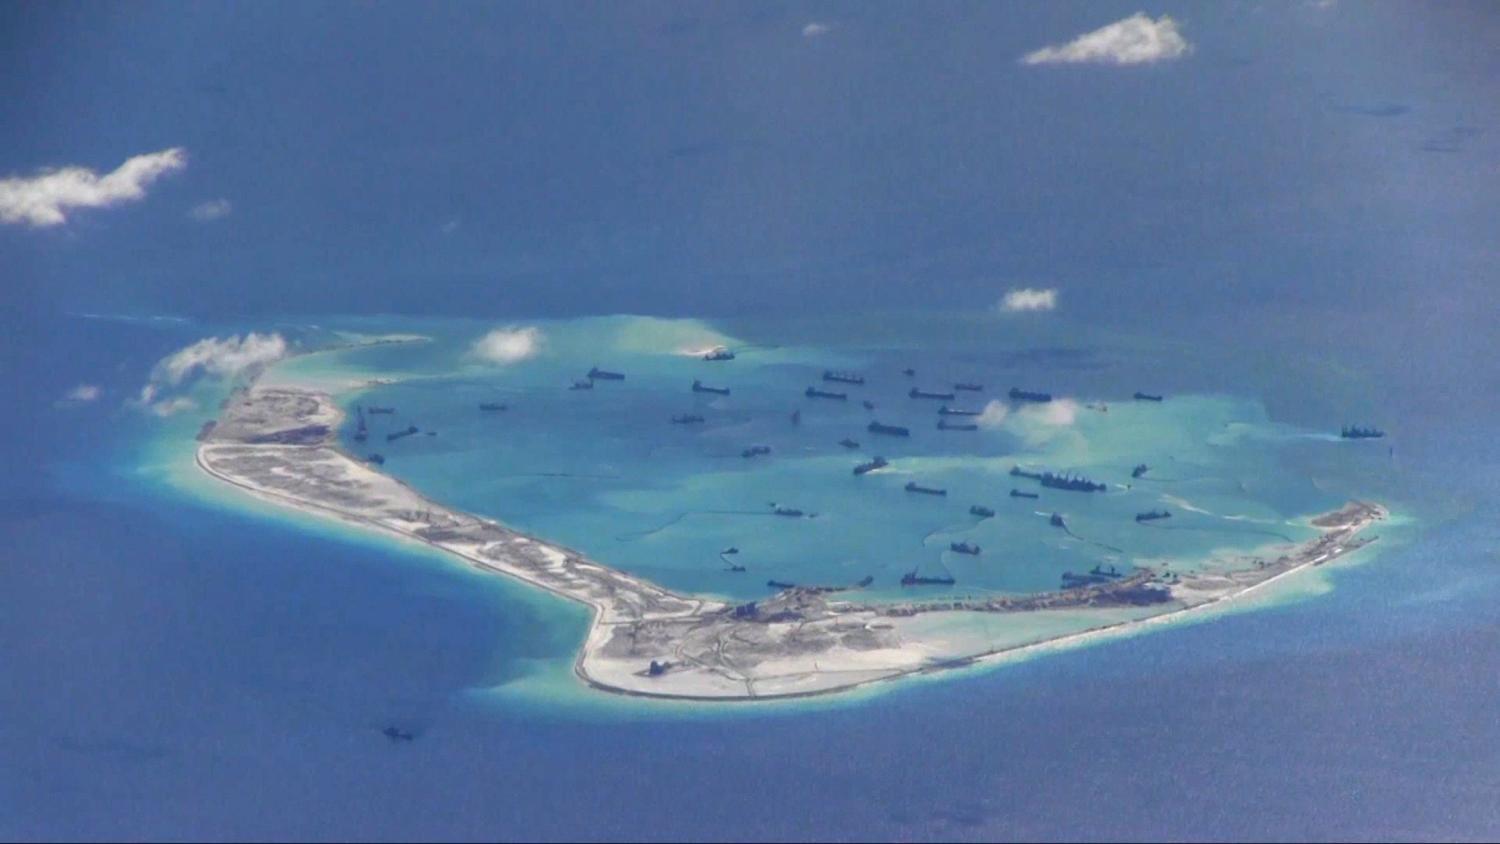 Kínai fenékkotró hajók a vitatott Spratly szigeteken, a Dél-Kínai-tengerben egy P-8A Poseidon amerikai felderítő repülőgép felvételén